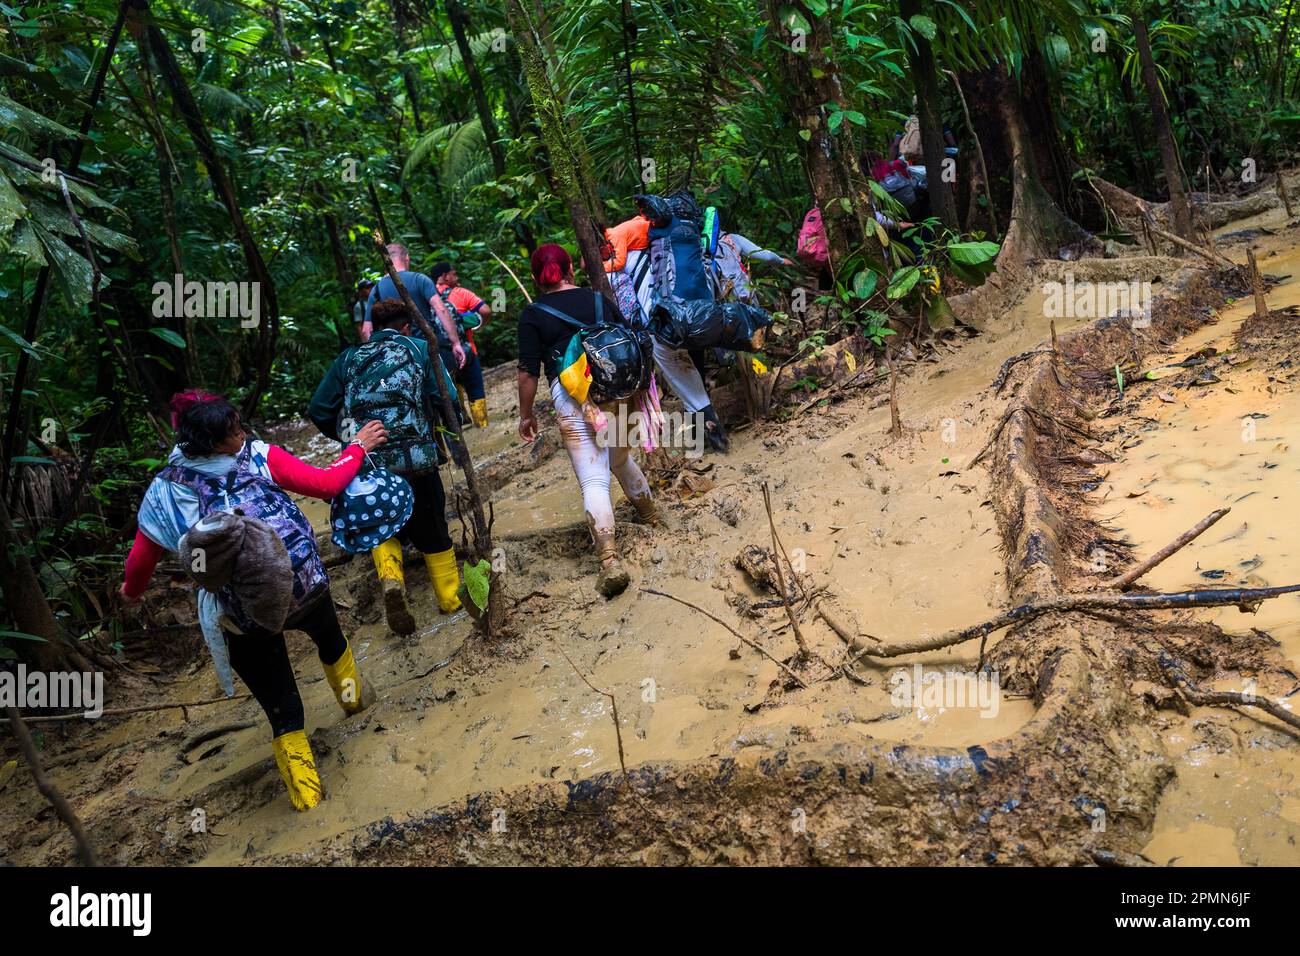 I migranti provenienti da Ecuador, Haiti e Nigeria camminano attraverso un sentiero fangoso nella giungla selvaggia e pericolosa del Darién Gap tra Colombia e Panamá. Foto Stock